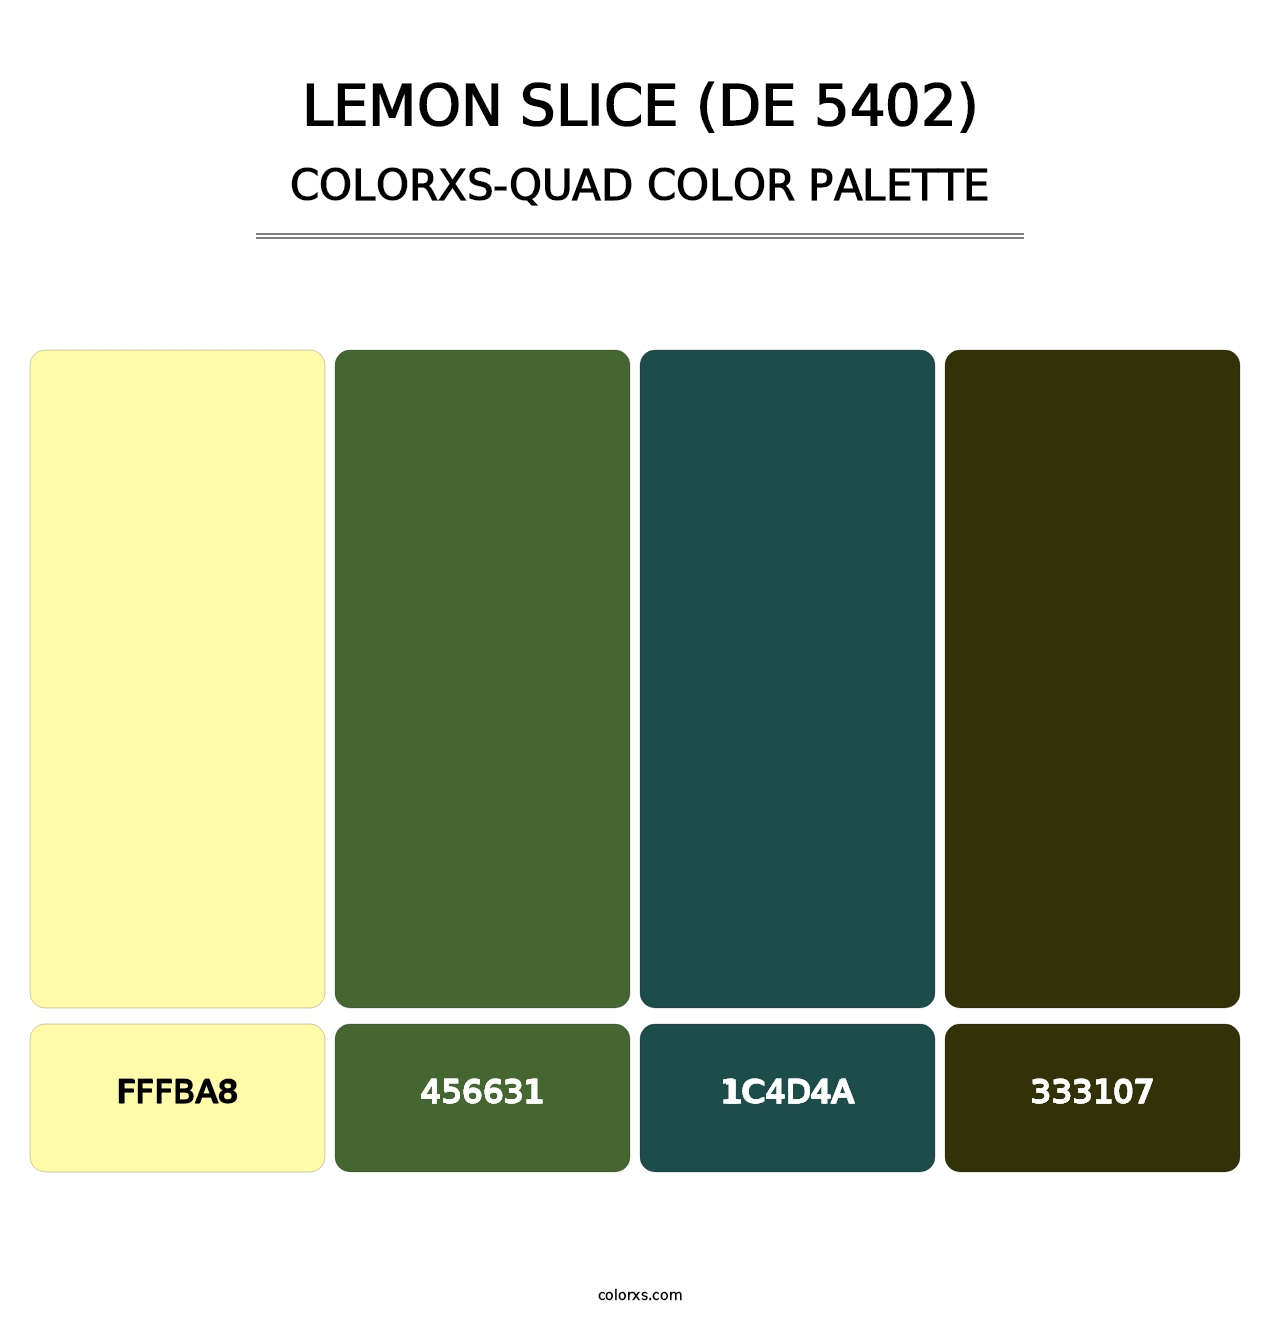 Lemon Slice (DE 5402) - Colorxs Quad Palette